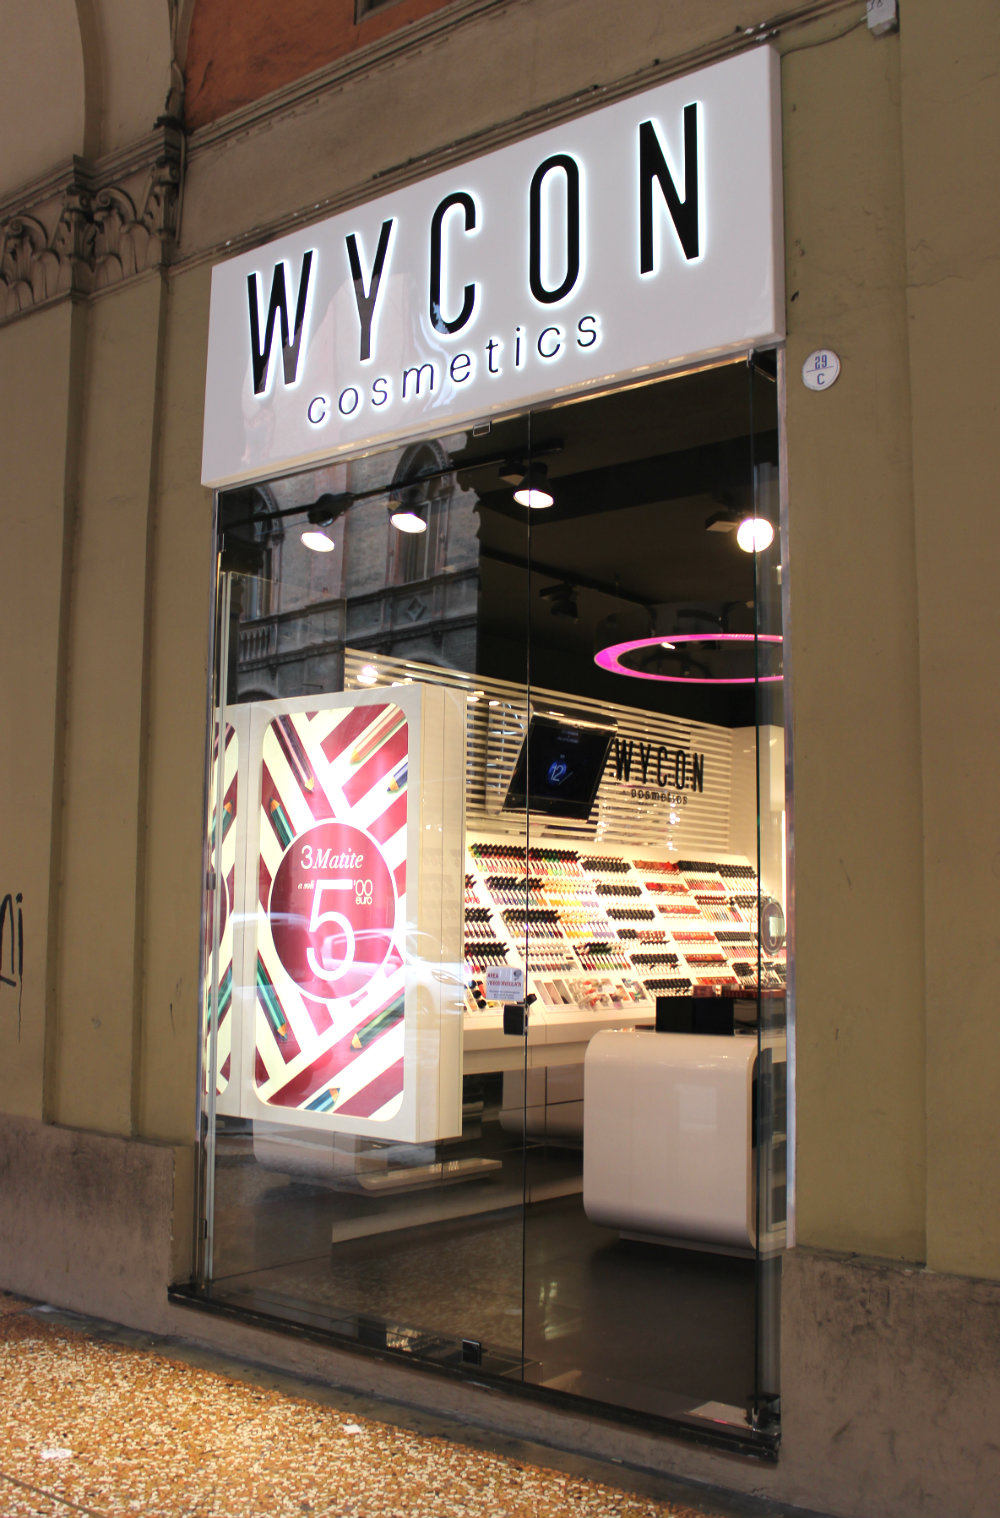 Wycon Store Bologna Italy